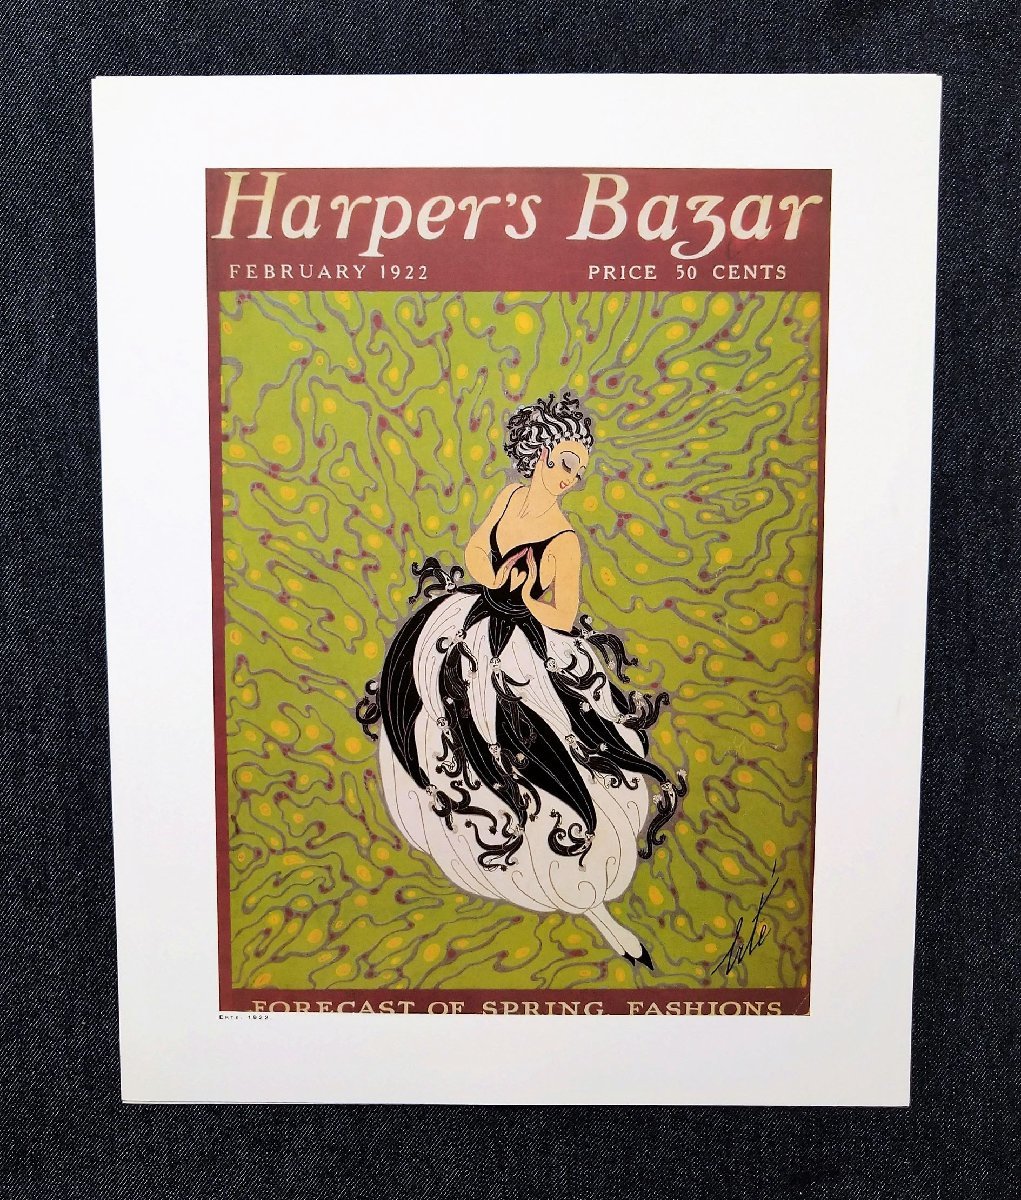 豪華BOXセット Harper's Bazaar 125周年 洋書 リチャード・アベドン/ギイ・ブルダン/サルバドール・ダリ/エルテ/カッサンドル/ブラッサイ